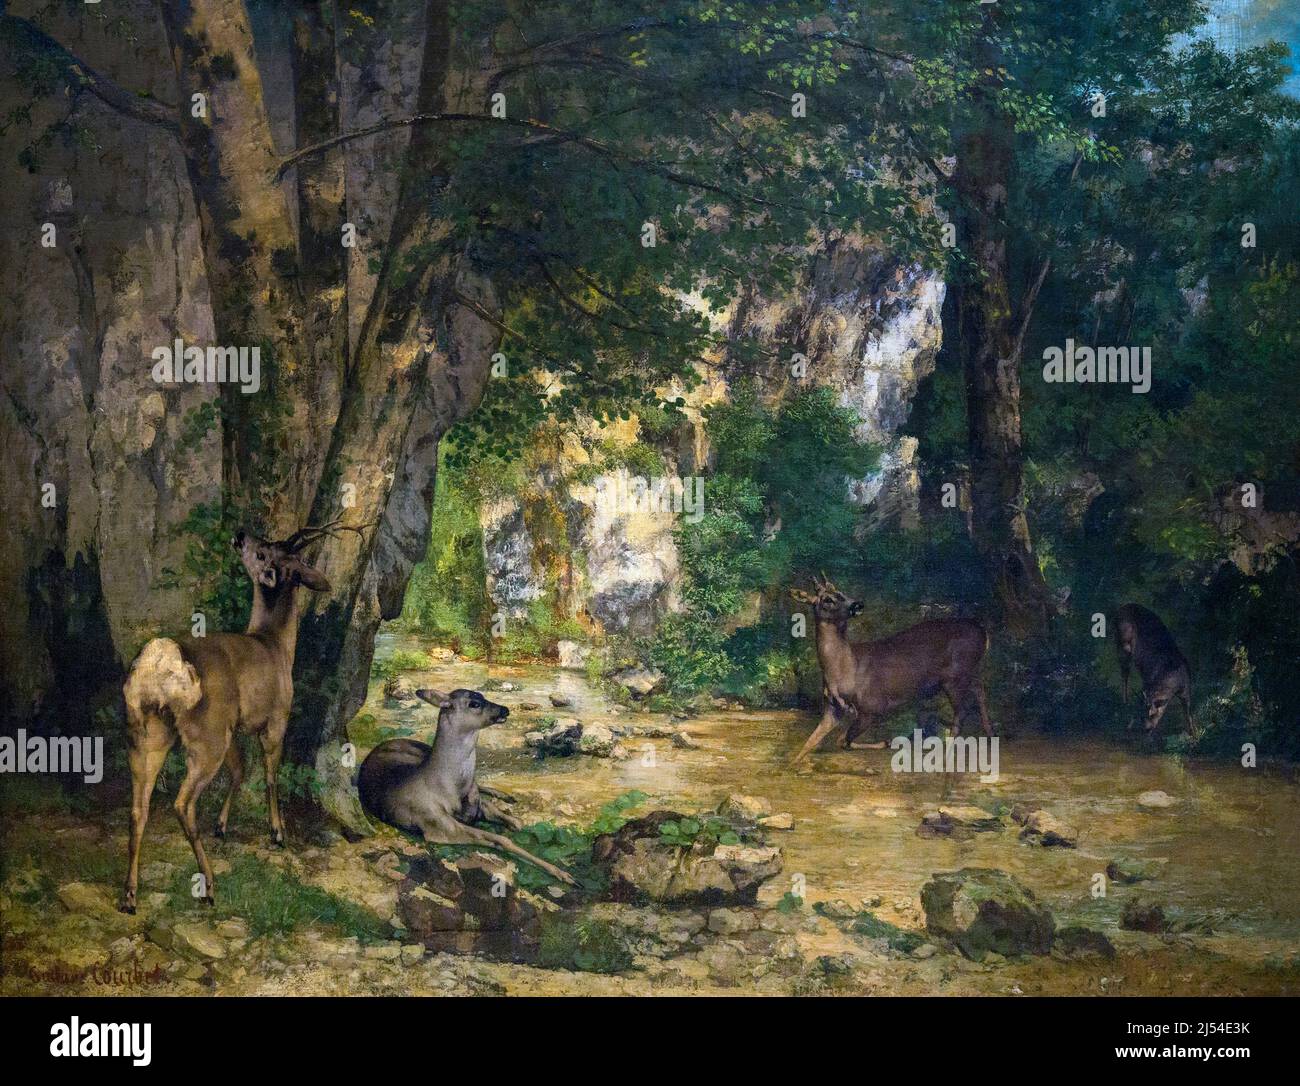 Regreso del ciervo al arroyo en Plaisir Fontaine, La remise des Chevreuils au ruisseau de Plaisir-Fontaine, Gustave Courbet, 1866, Musee D'Orsay Foto de stock